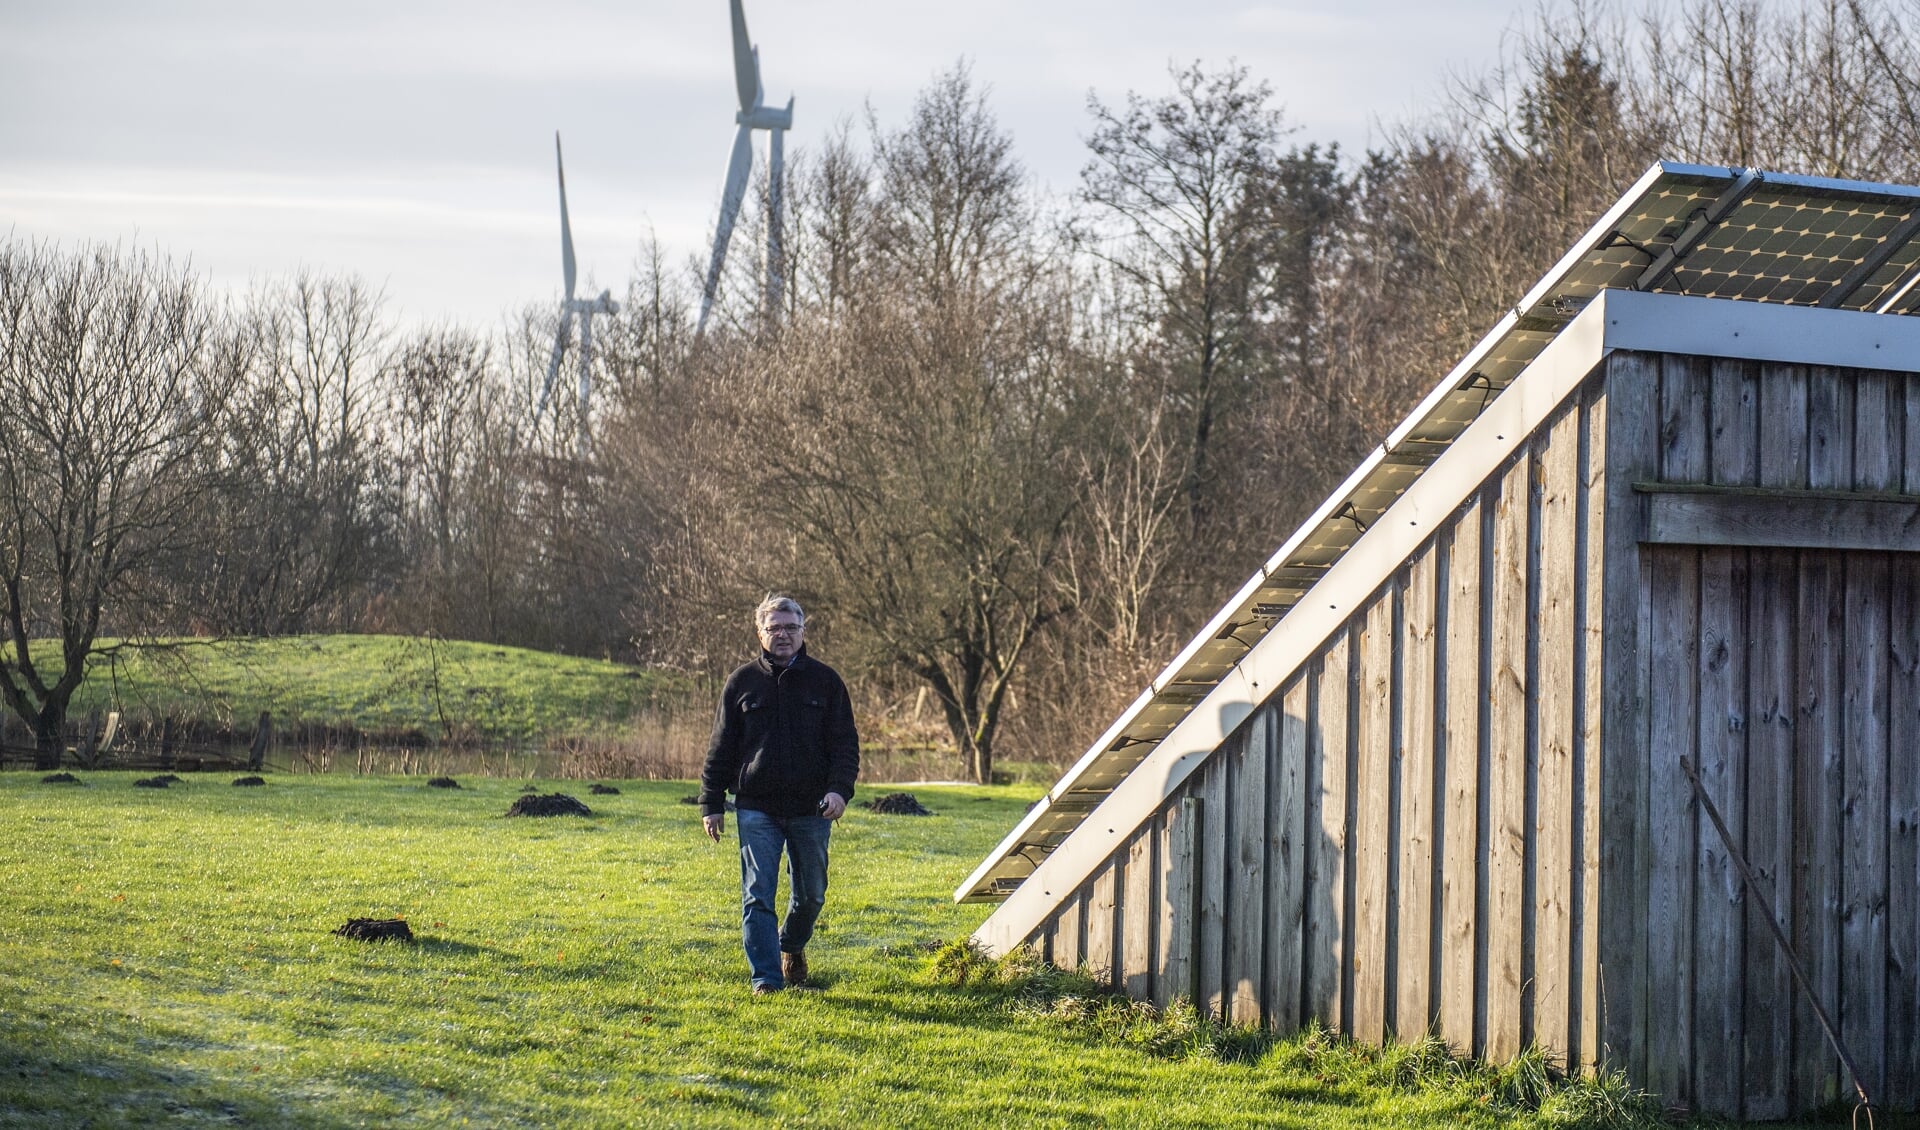 Klixbülls borgmester, Werner Schweizer (kommunal vælgerforening) står i spidsen for at omsætte verdensmålene i den lille kommune med de mange vindmøller. 
Foto: Kira Kutscher